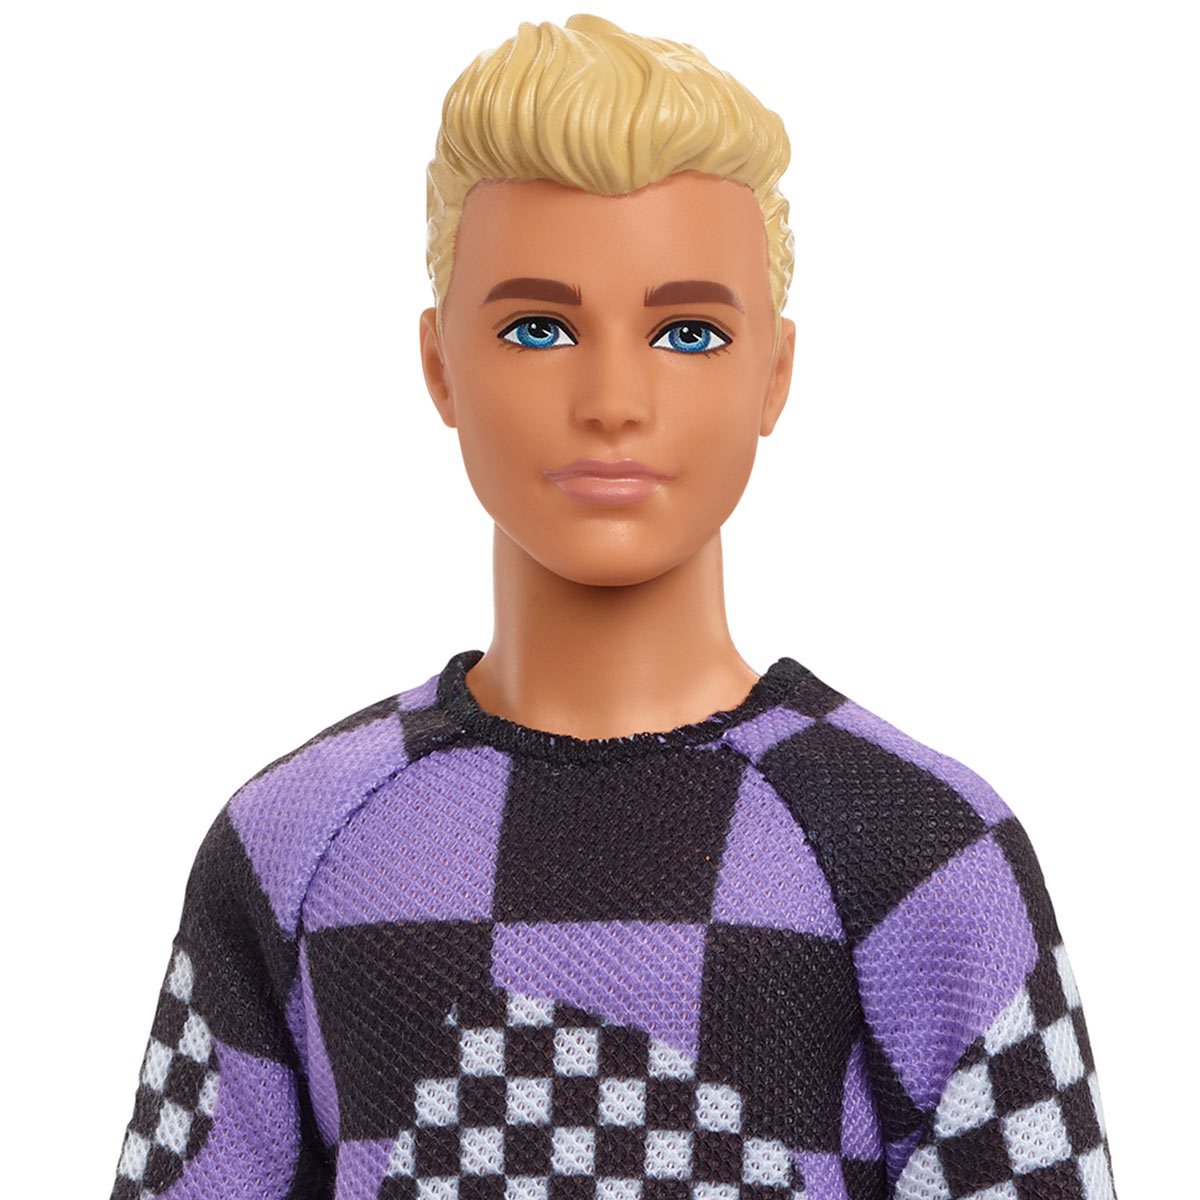 filosofie hart gokken Barbie Ken Fashionista Doll #191 with Checkered Sweater